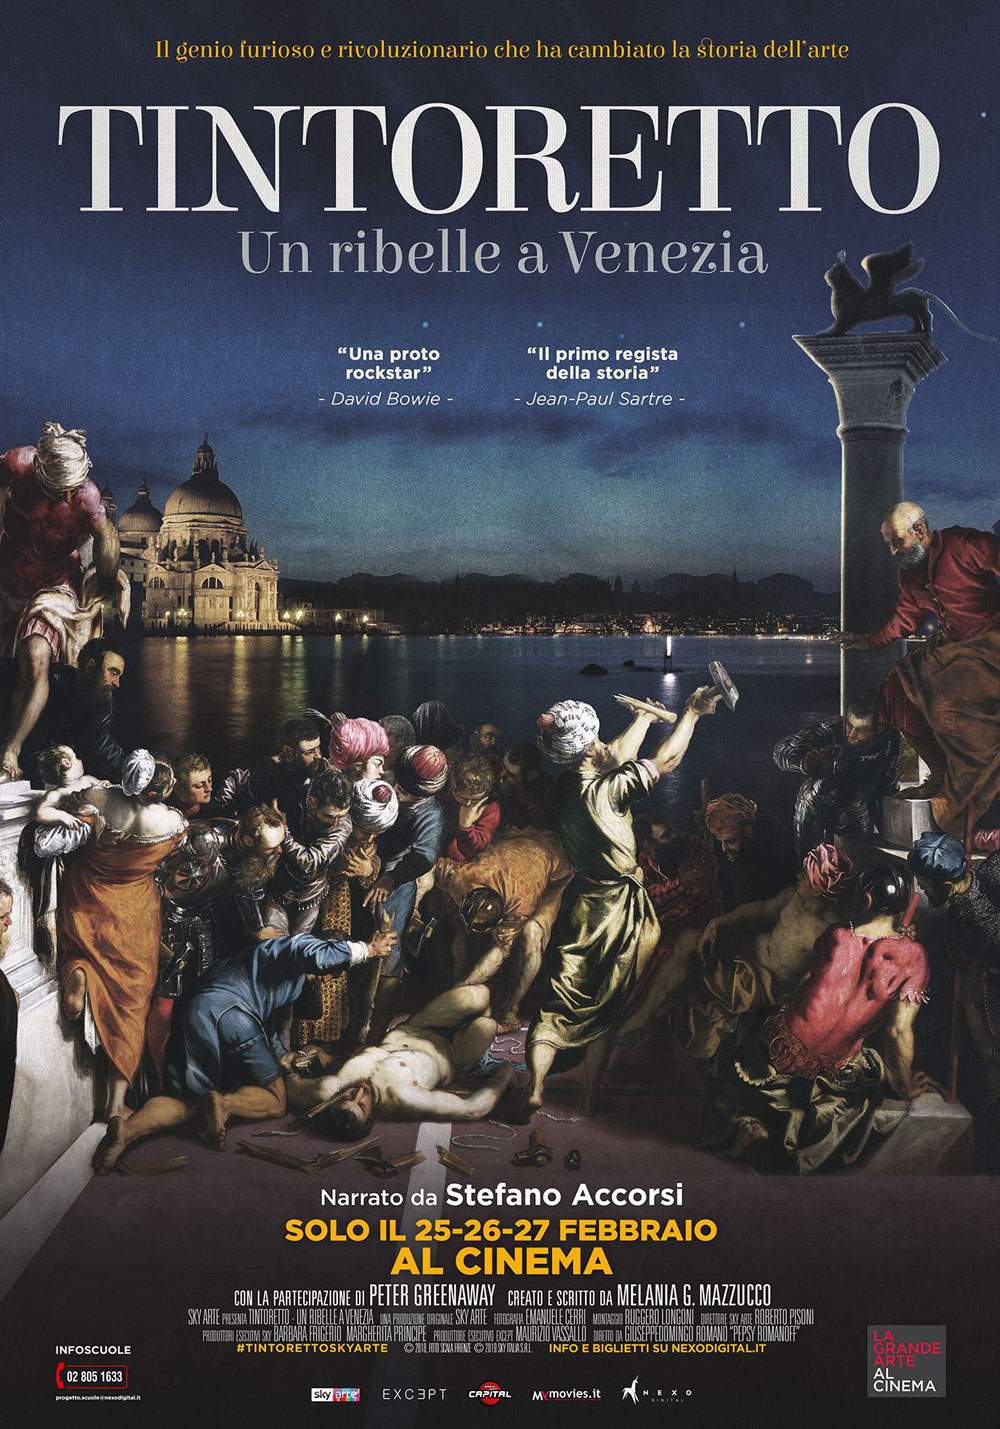 Anteprima: a febbraio nei cinema italiani il docu-film dedicato a Tintoretto